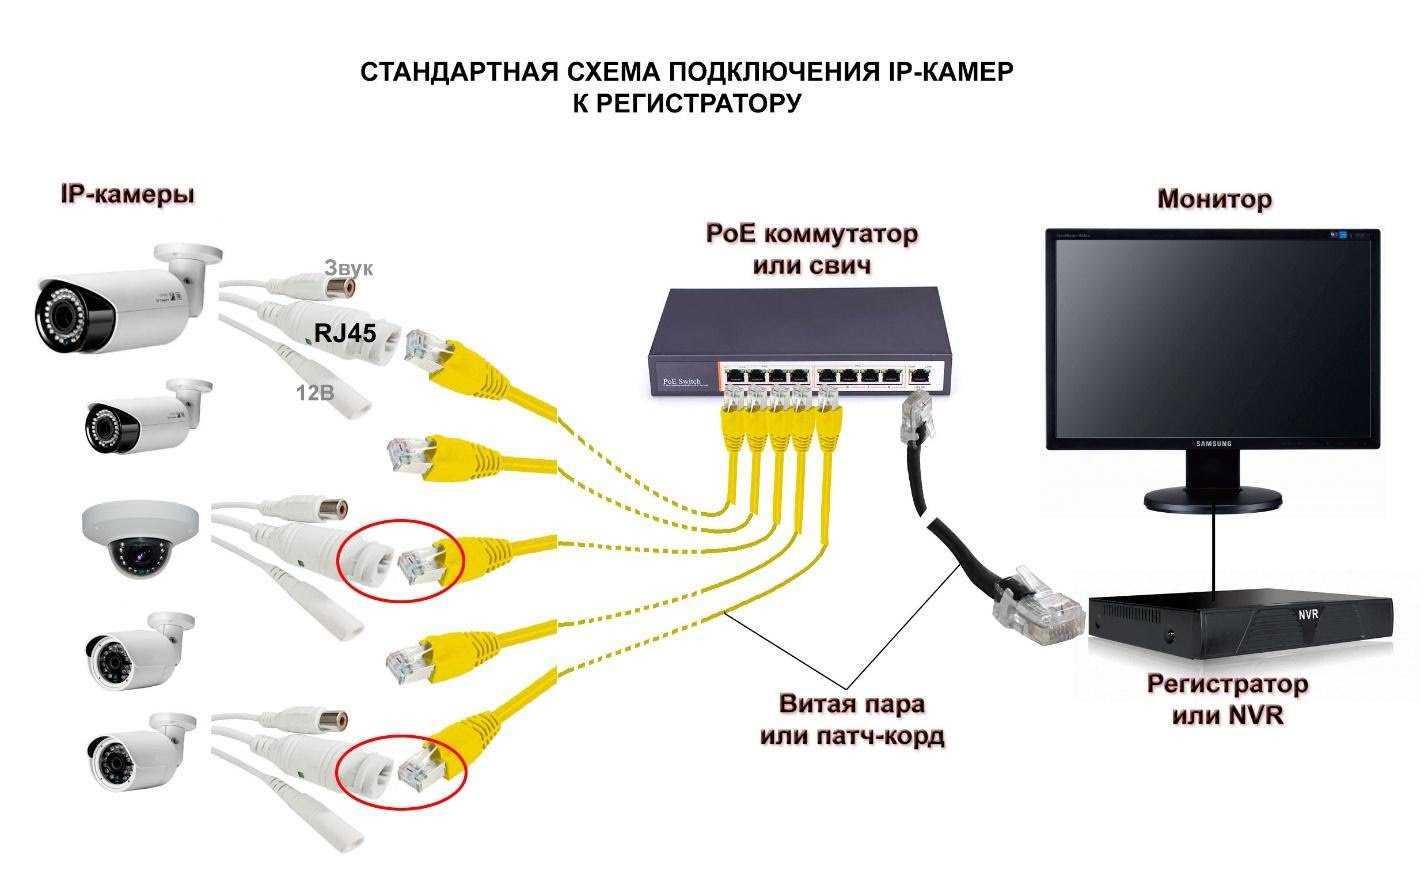 Как установить ip камеру видеонаблюдения: схема установочных работ